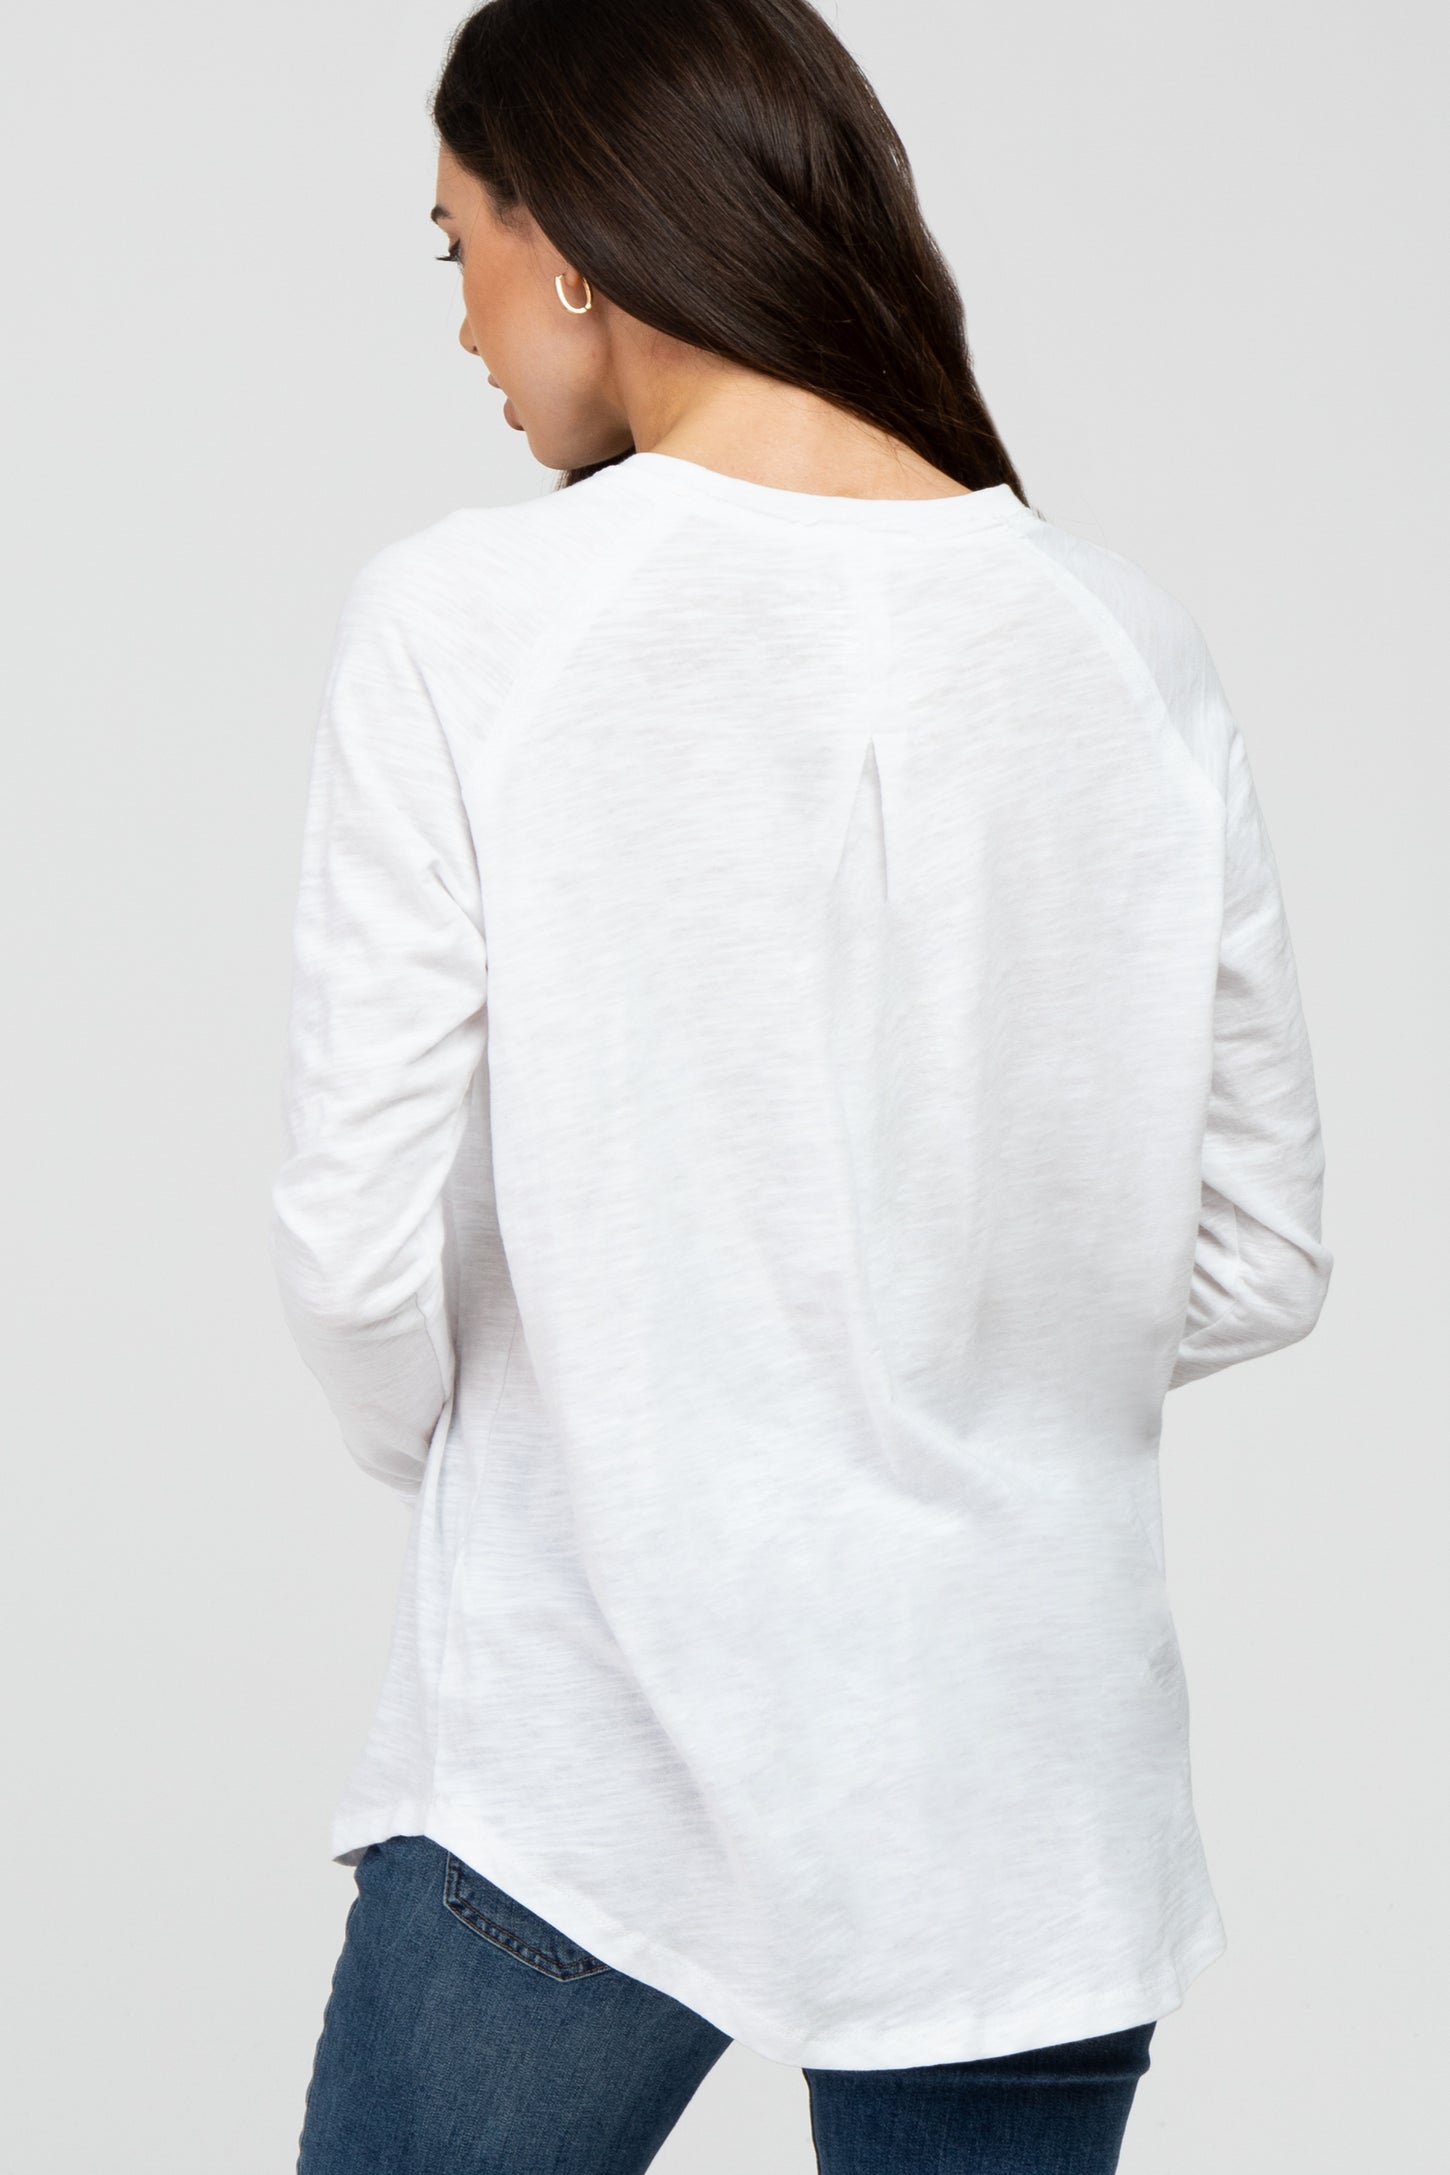 White Basic Raglan Long Sleeve Top